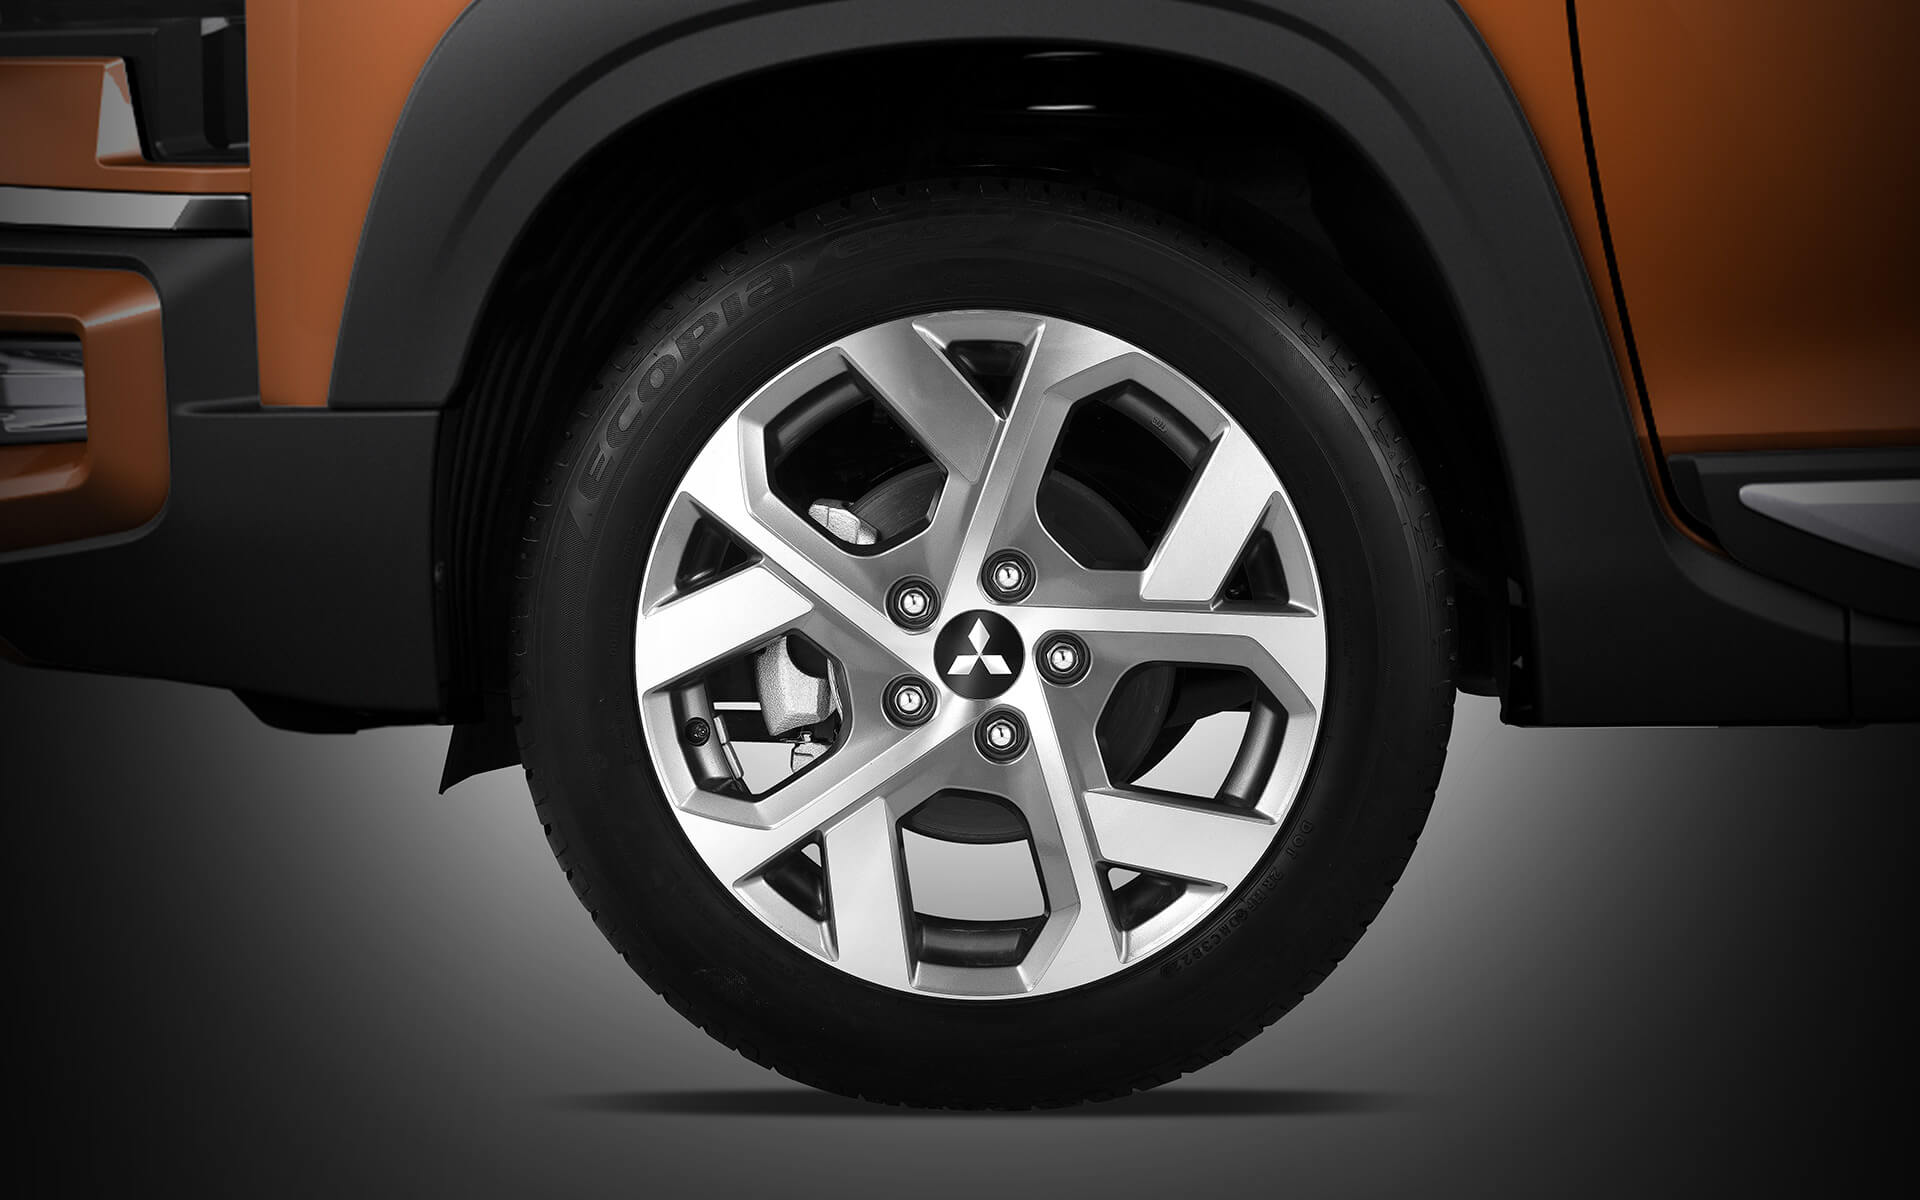 Chất SUV của Xpander Cross 2023 được thể hiện qua mâm hợp kim cứng cáp 17 inch, thiết kế 5 chấu kép hình chữ Y với 2 tông màu tương phản, gia tăng sự vững chãi cho tổng thể chiếc xe, khoảng sáng gầm 225 mm cao nhất phân khúc giúp xe dễ dàng vượt qua những địa hình khó khăn hay ngập nước